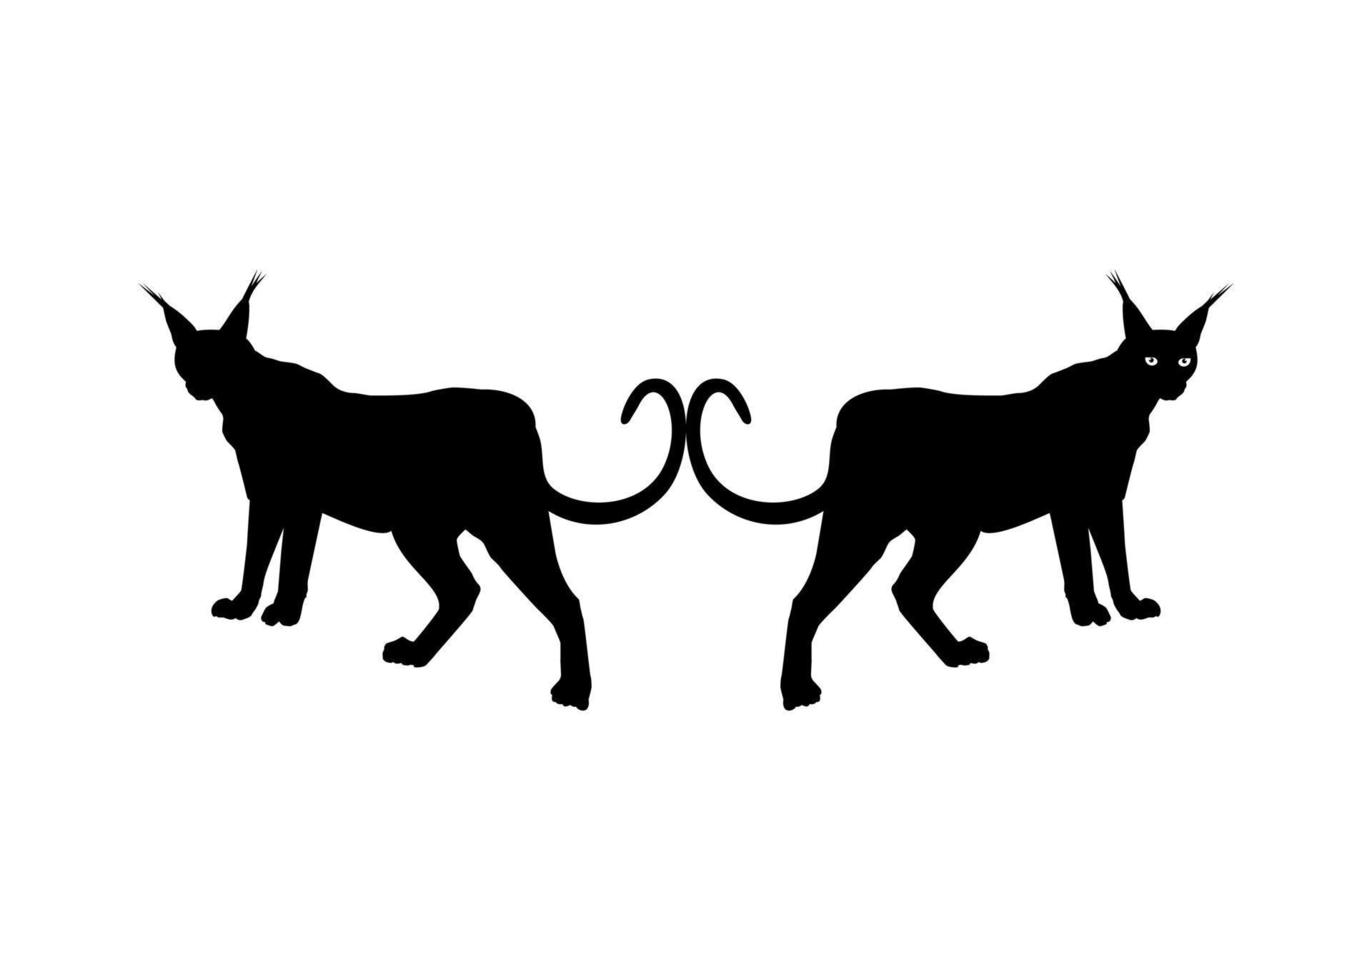 par da silhueta de gato caracal para logotipo, pictograma, site ou elemento de design gráfico. ilustração vetorial vetor